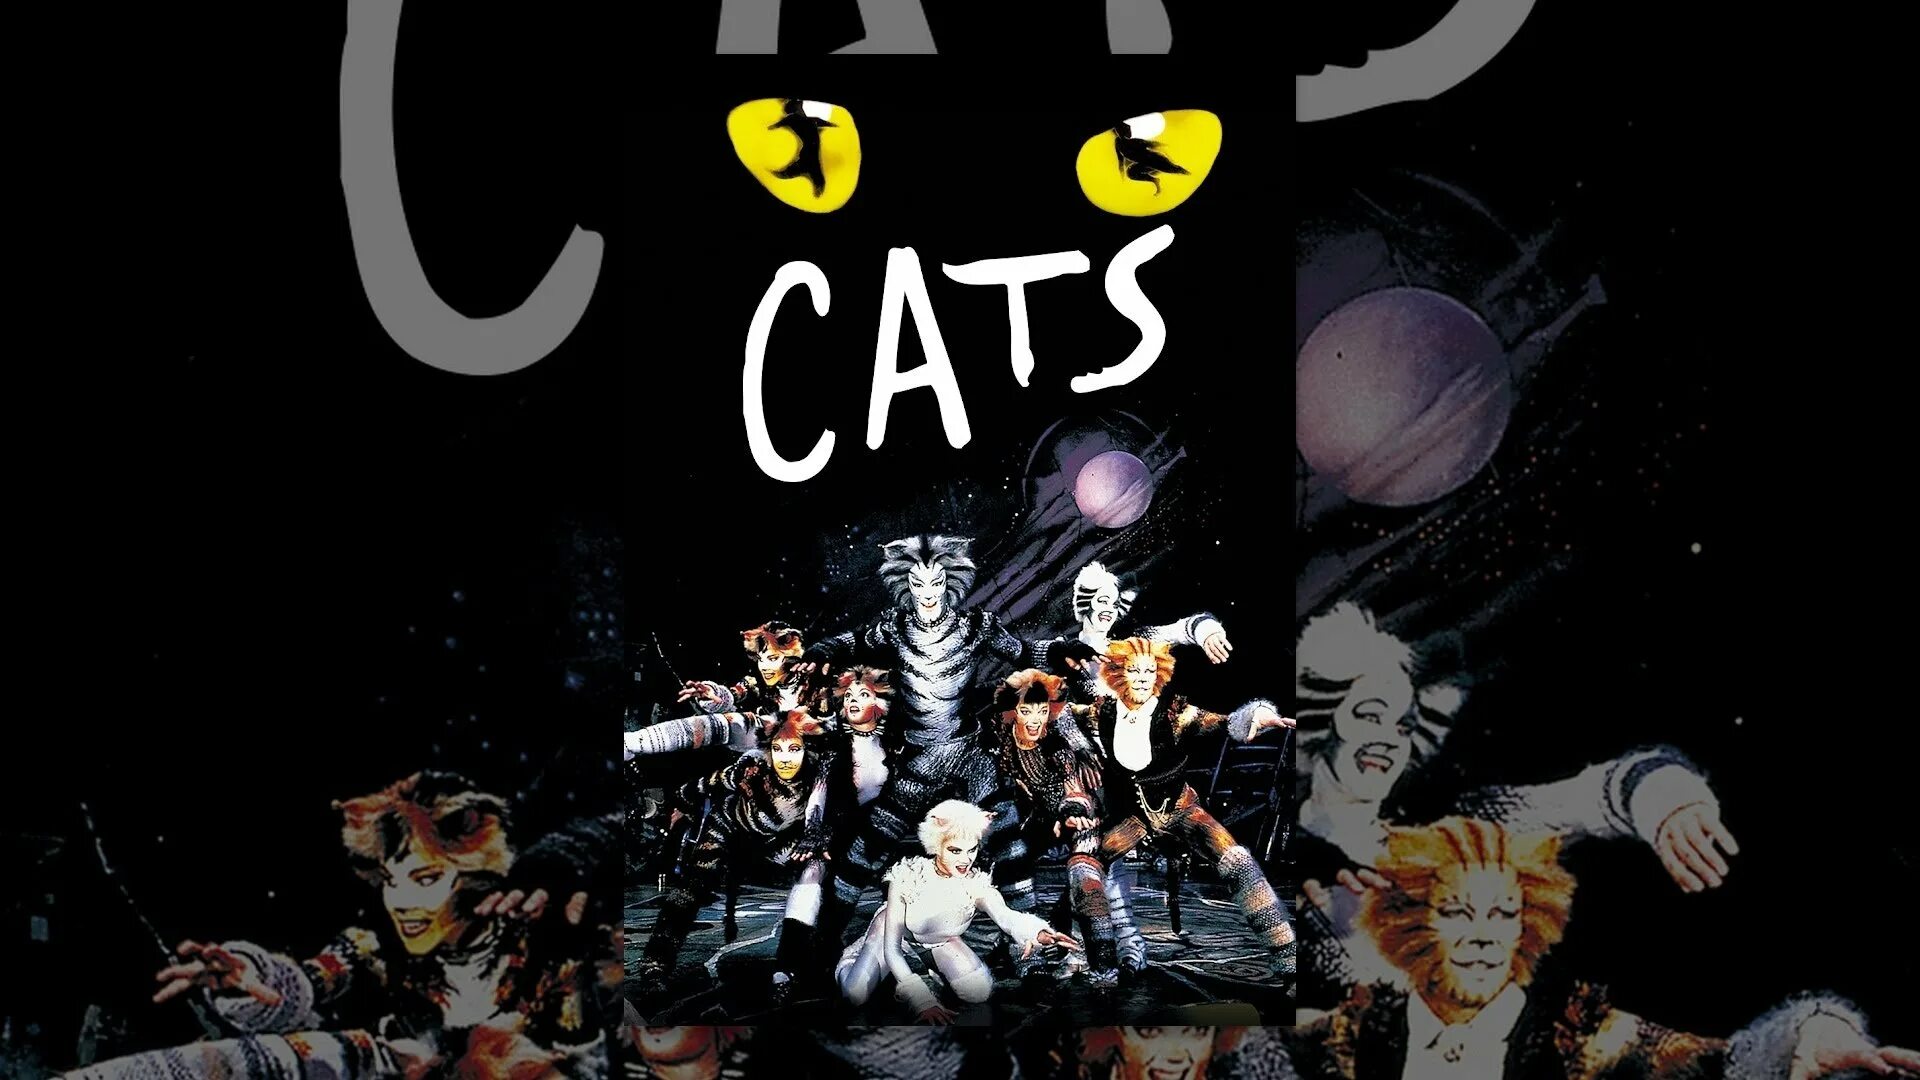 Мюзикл кошки 1981. Cats Эндрю Ллойд Уэббер. Мюзикл кошки э. Ллойд Уэббер. Афиша к мюзиклу кошки. Эндрю уэббер кошки